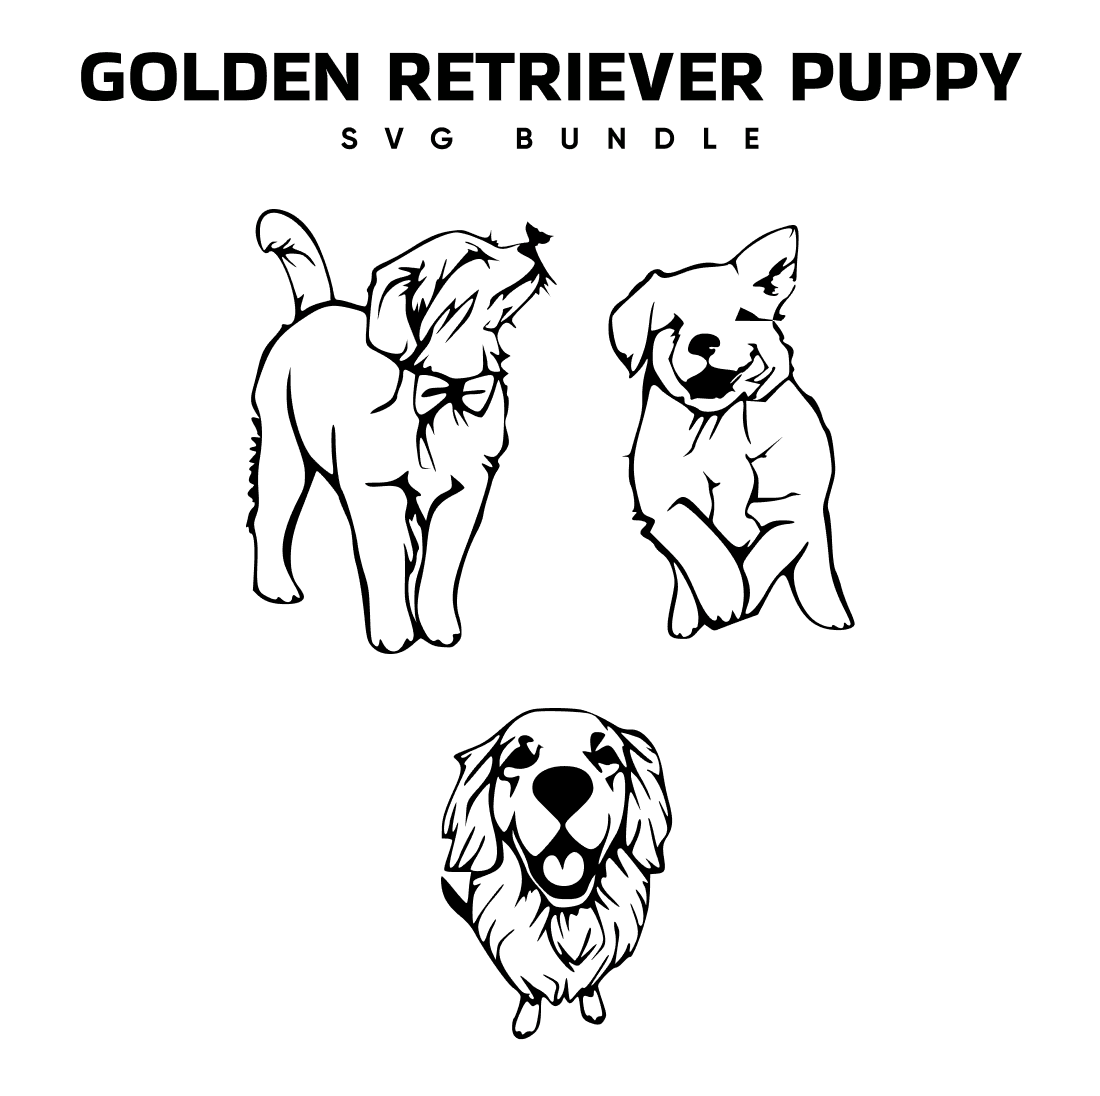 Golden retriever puppy svg bundle, first picture 1100x1100.